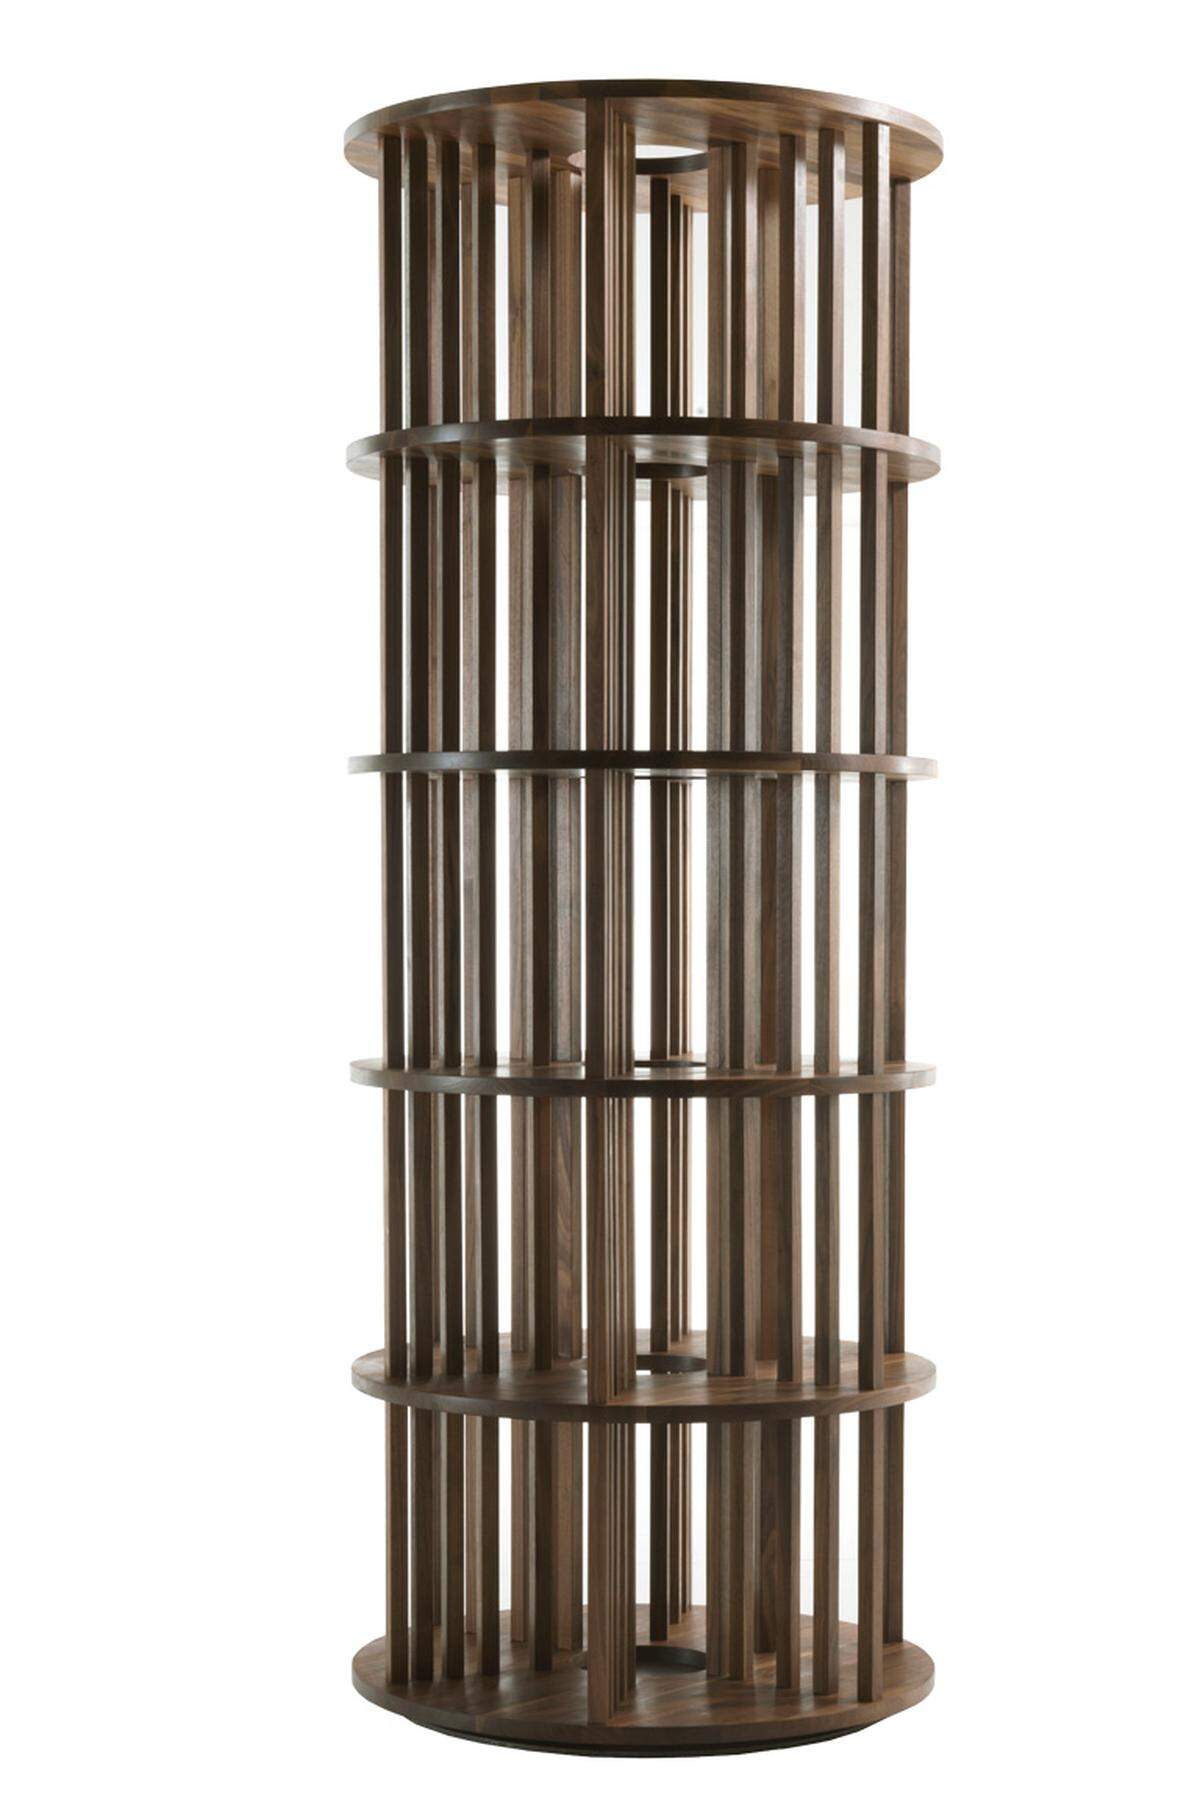 Der italienische Hersteller Riva 1920 stellt „Pillar“ vor: ein Regal, das in Walnussausführung versucht, optimale Platzausnützung zu praktizieren.